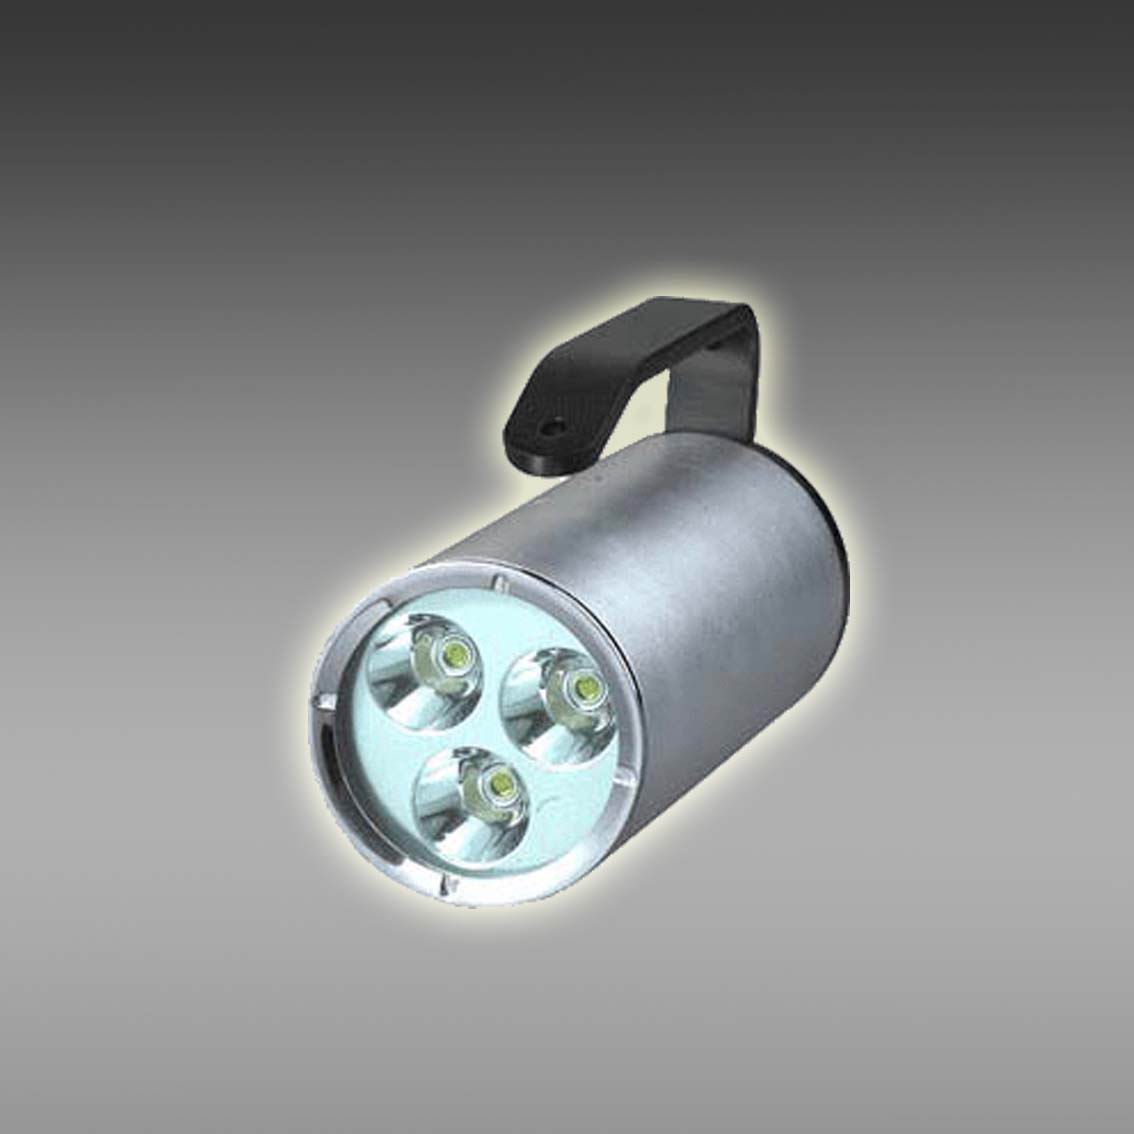 成都LED防爆手提探照灯批发-型号 YBT3220